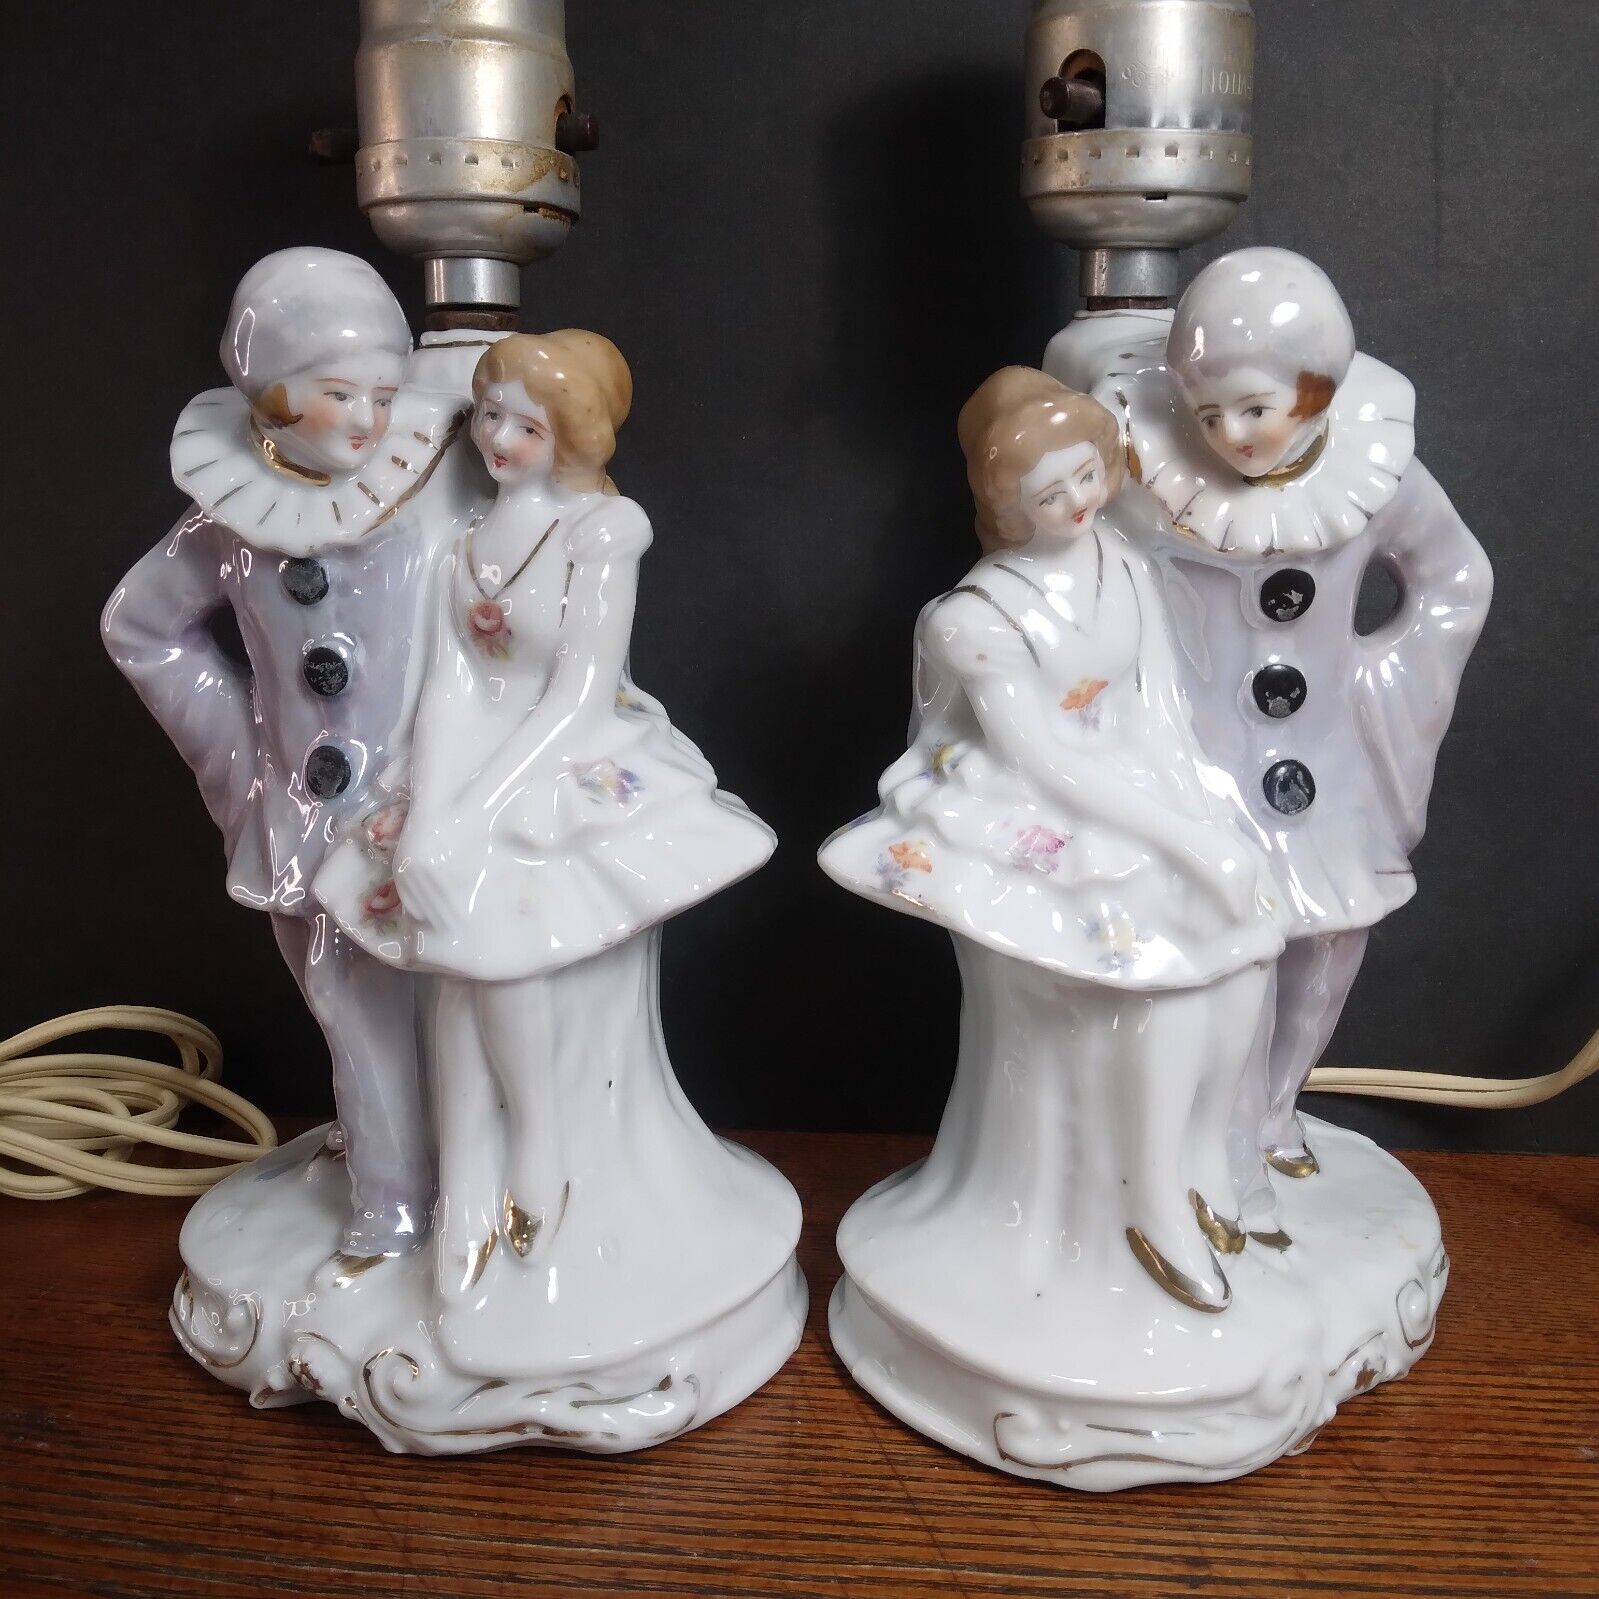 PRIVATE LISTING FOR 2 Porcelain Boudoir Lamps Pierrot Pierrette Vtg Japan Works